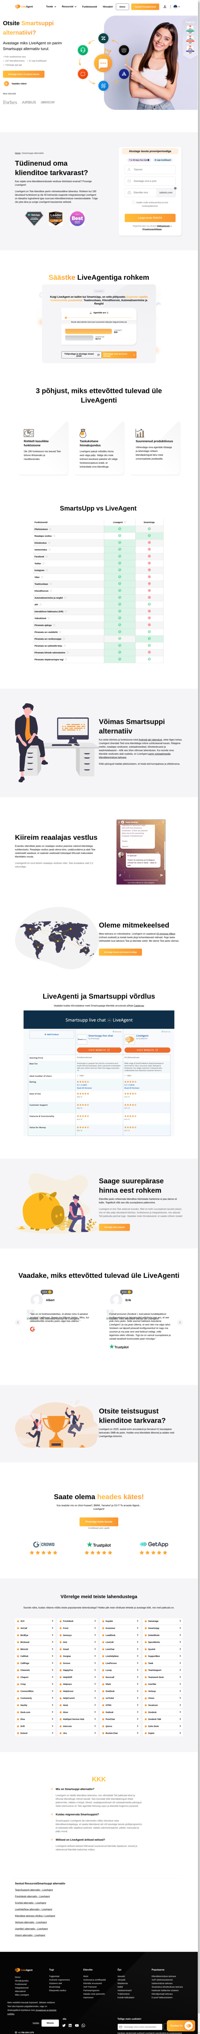 LiveAgent on ülim omnikanaliline lahendus Teie klienditoele. Liituge LiveAgentiga juba täna ja ühinege parema tugiteenuse pakkumisel teiste ettevõtetega.